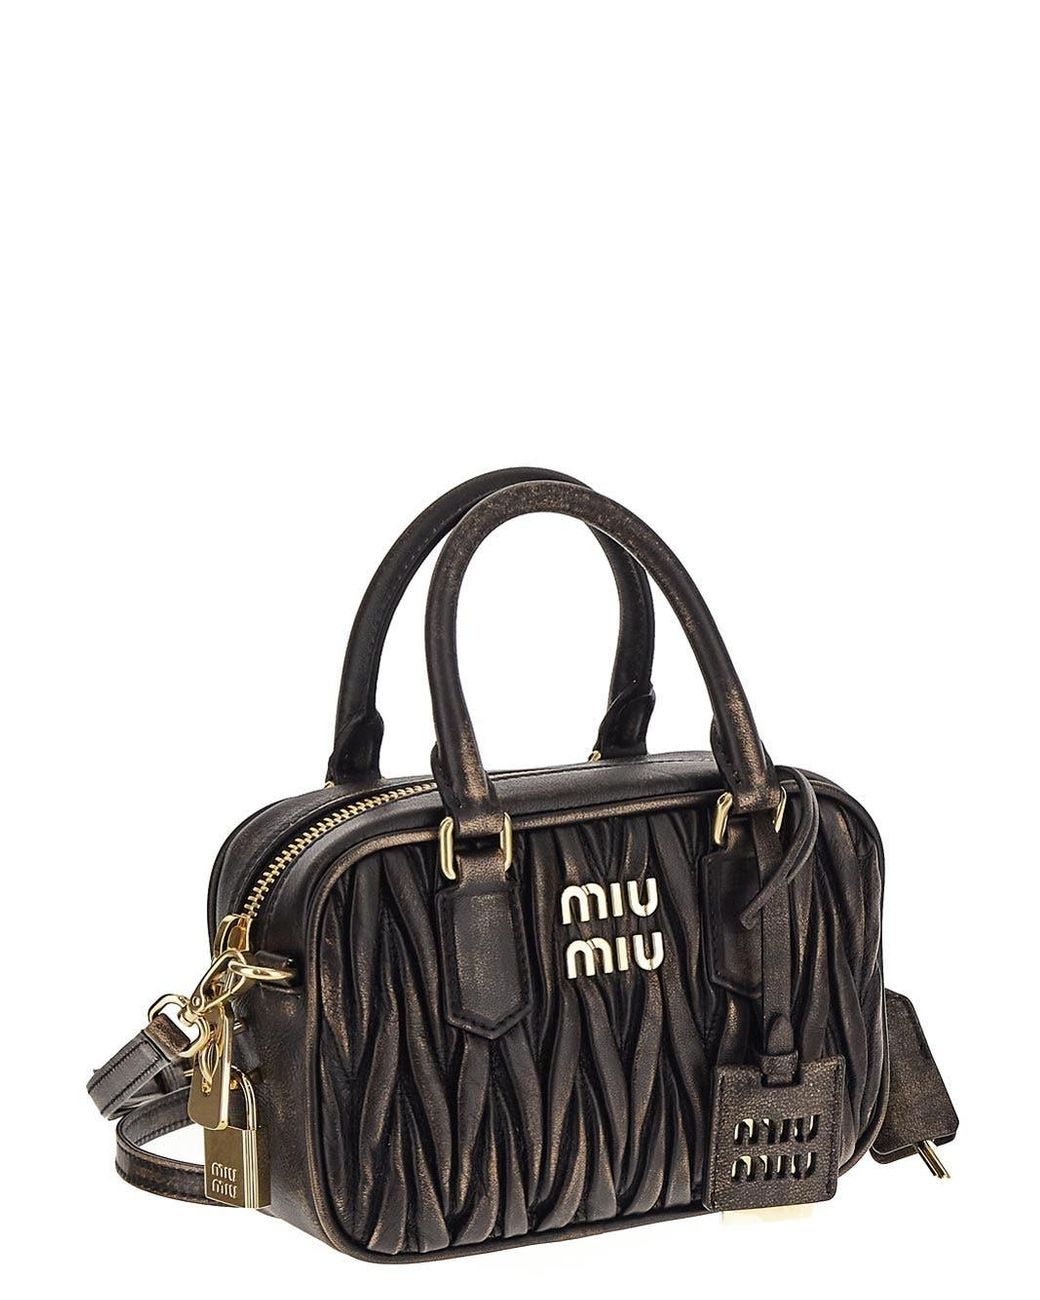 Miu Miu Matelassé Nappa Leather Top-handles Bag in Black